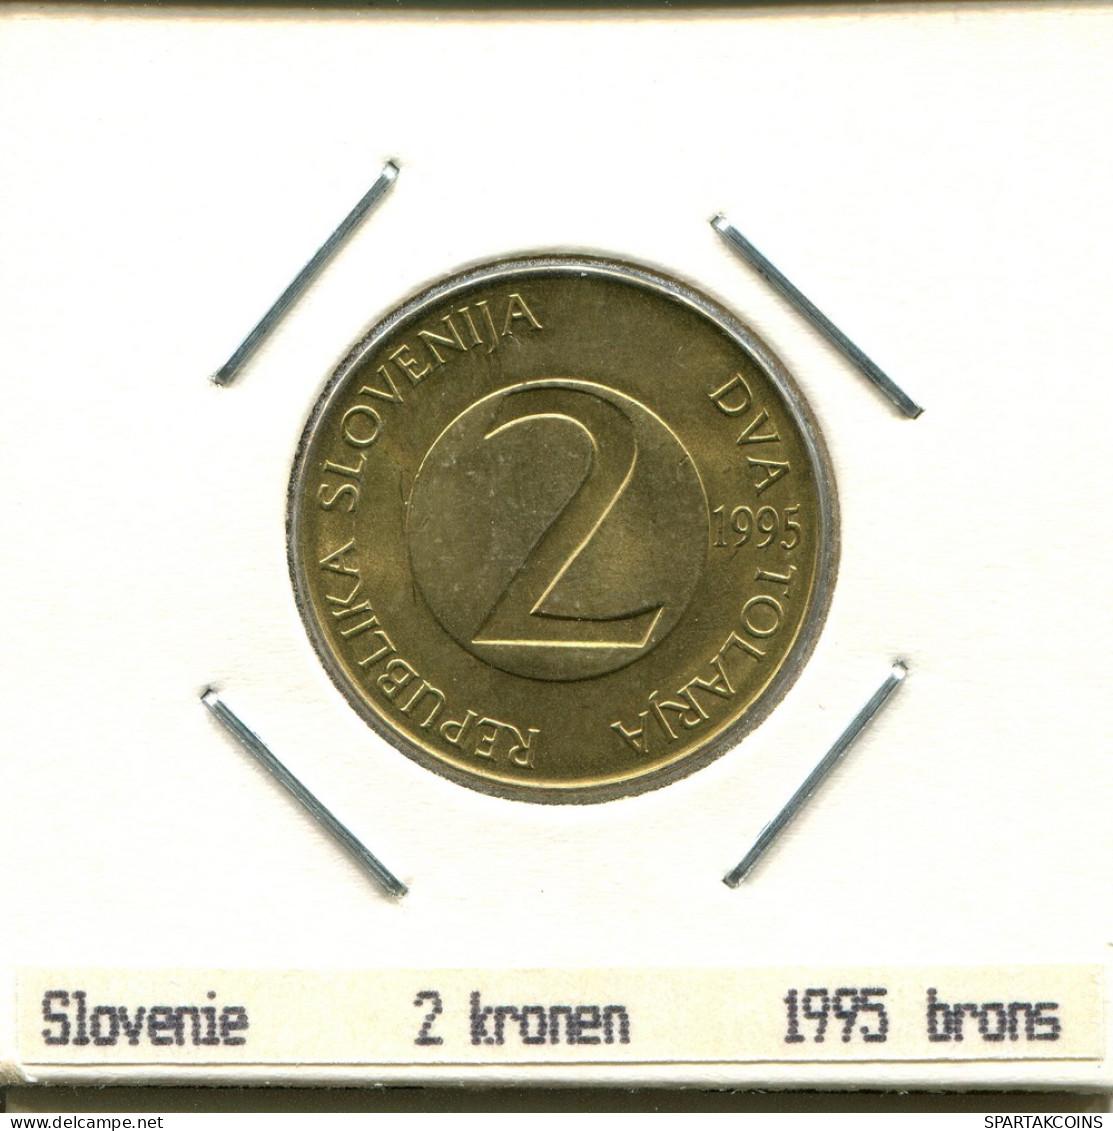 2 TOLARJA 1995 SLOVÉNIE SLOVENIA Pièce #AS570.F - Slovenia